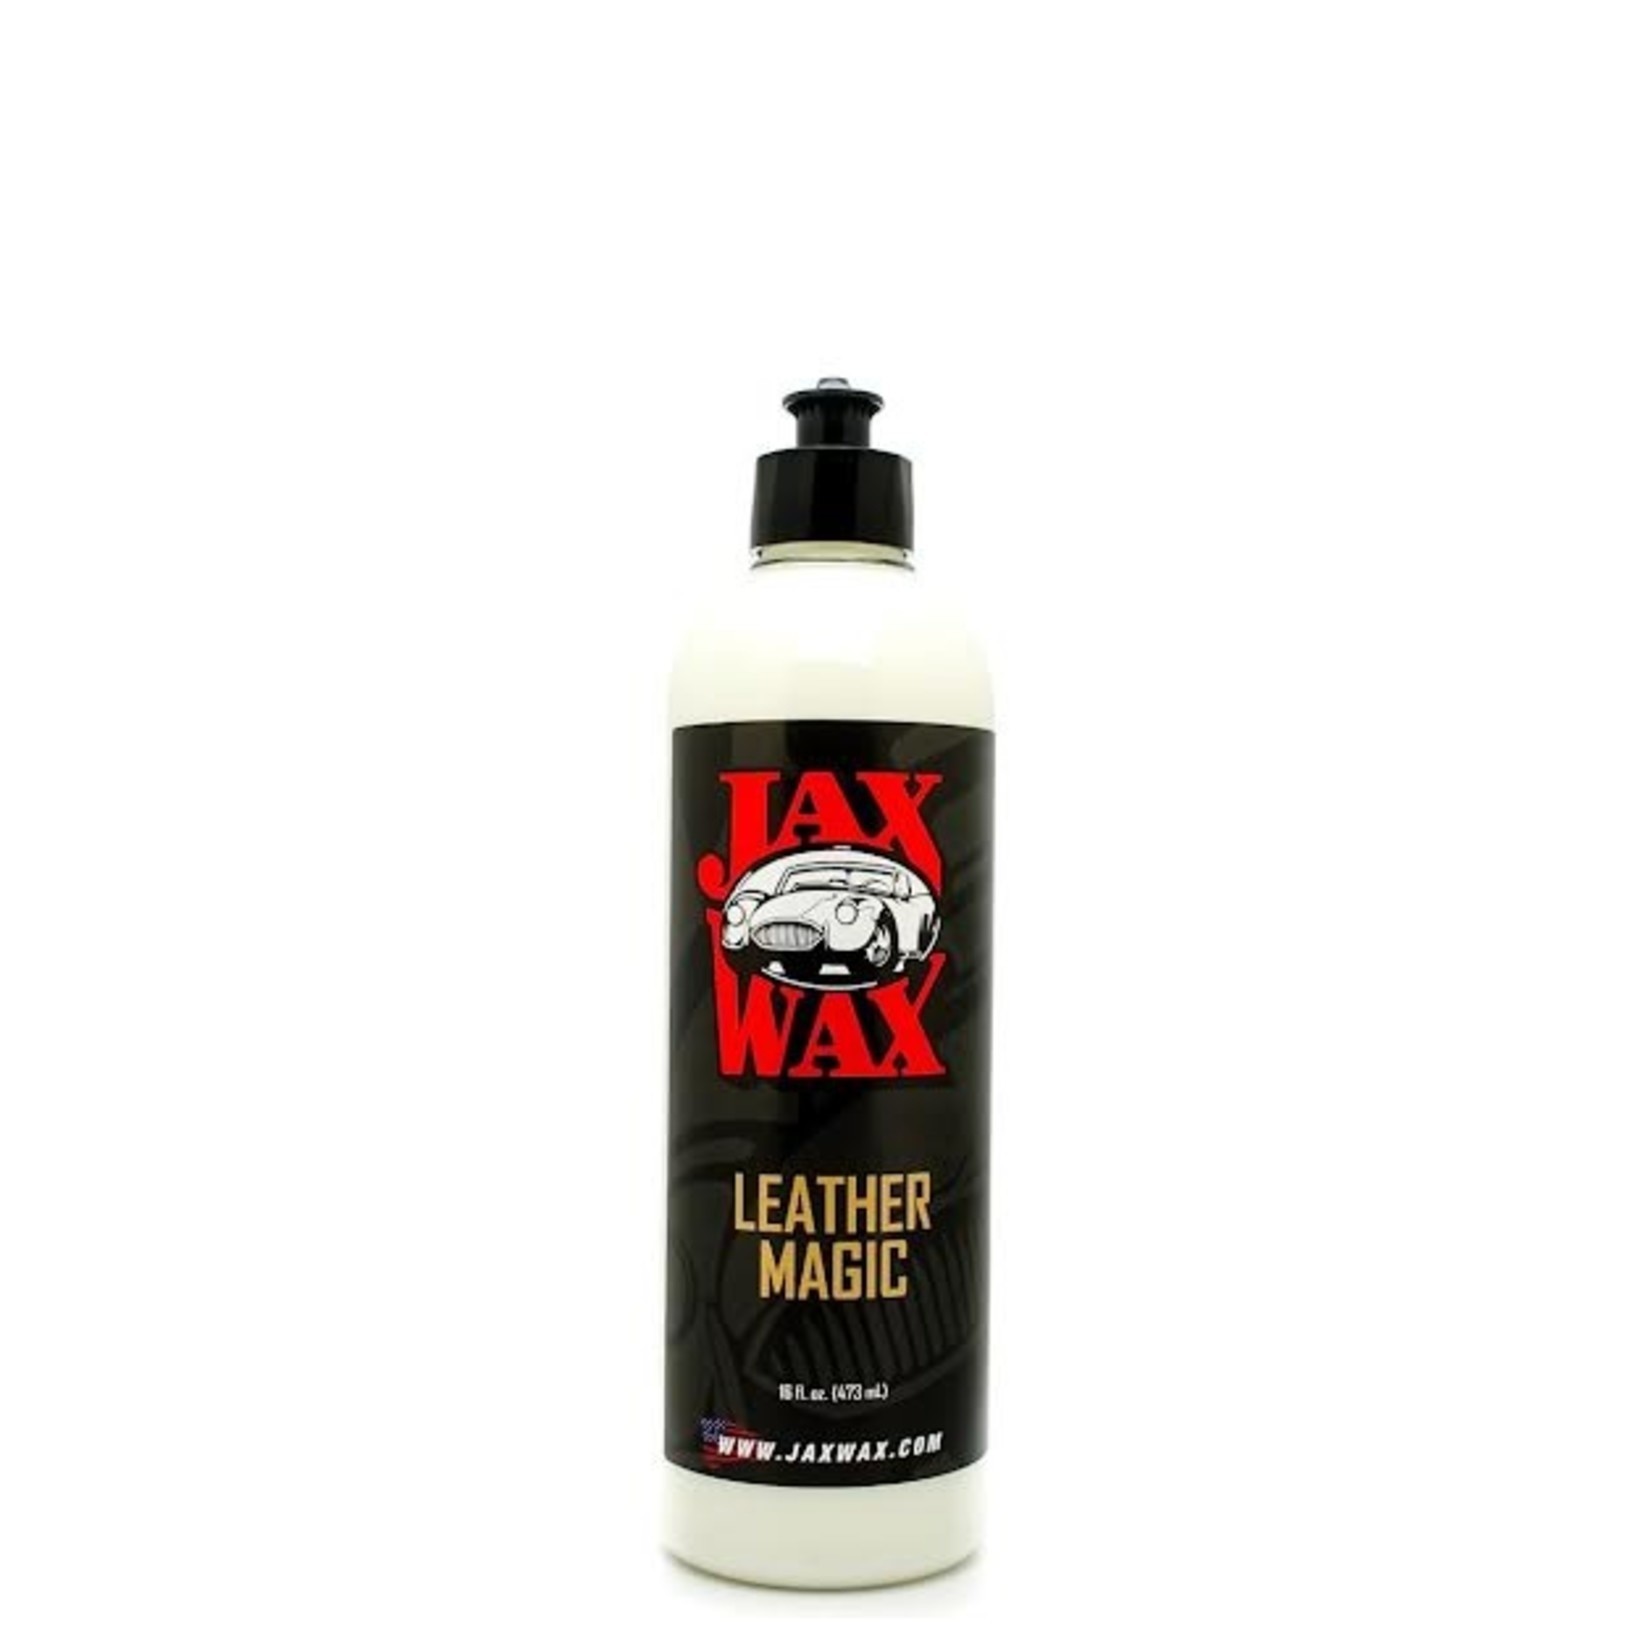 Jax Wax Leather Magic (32oz)